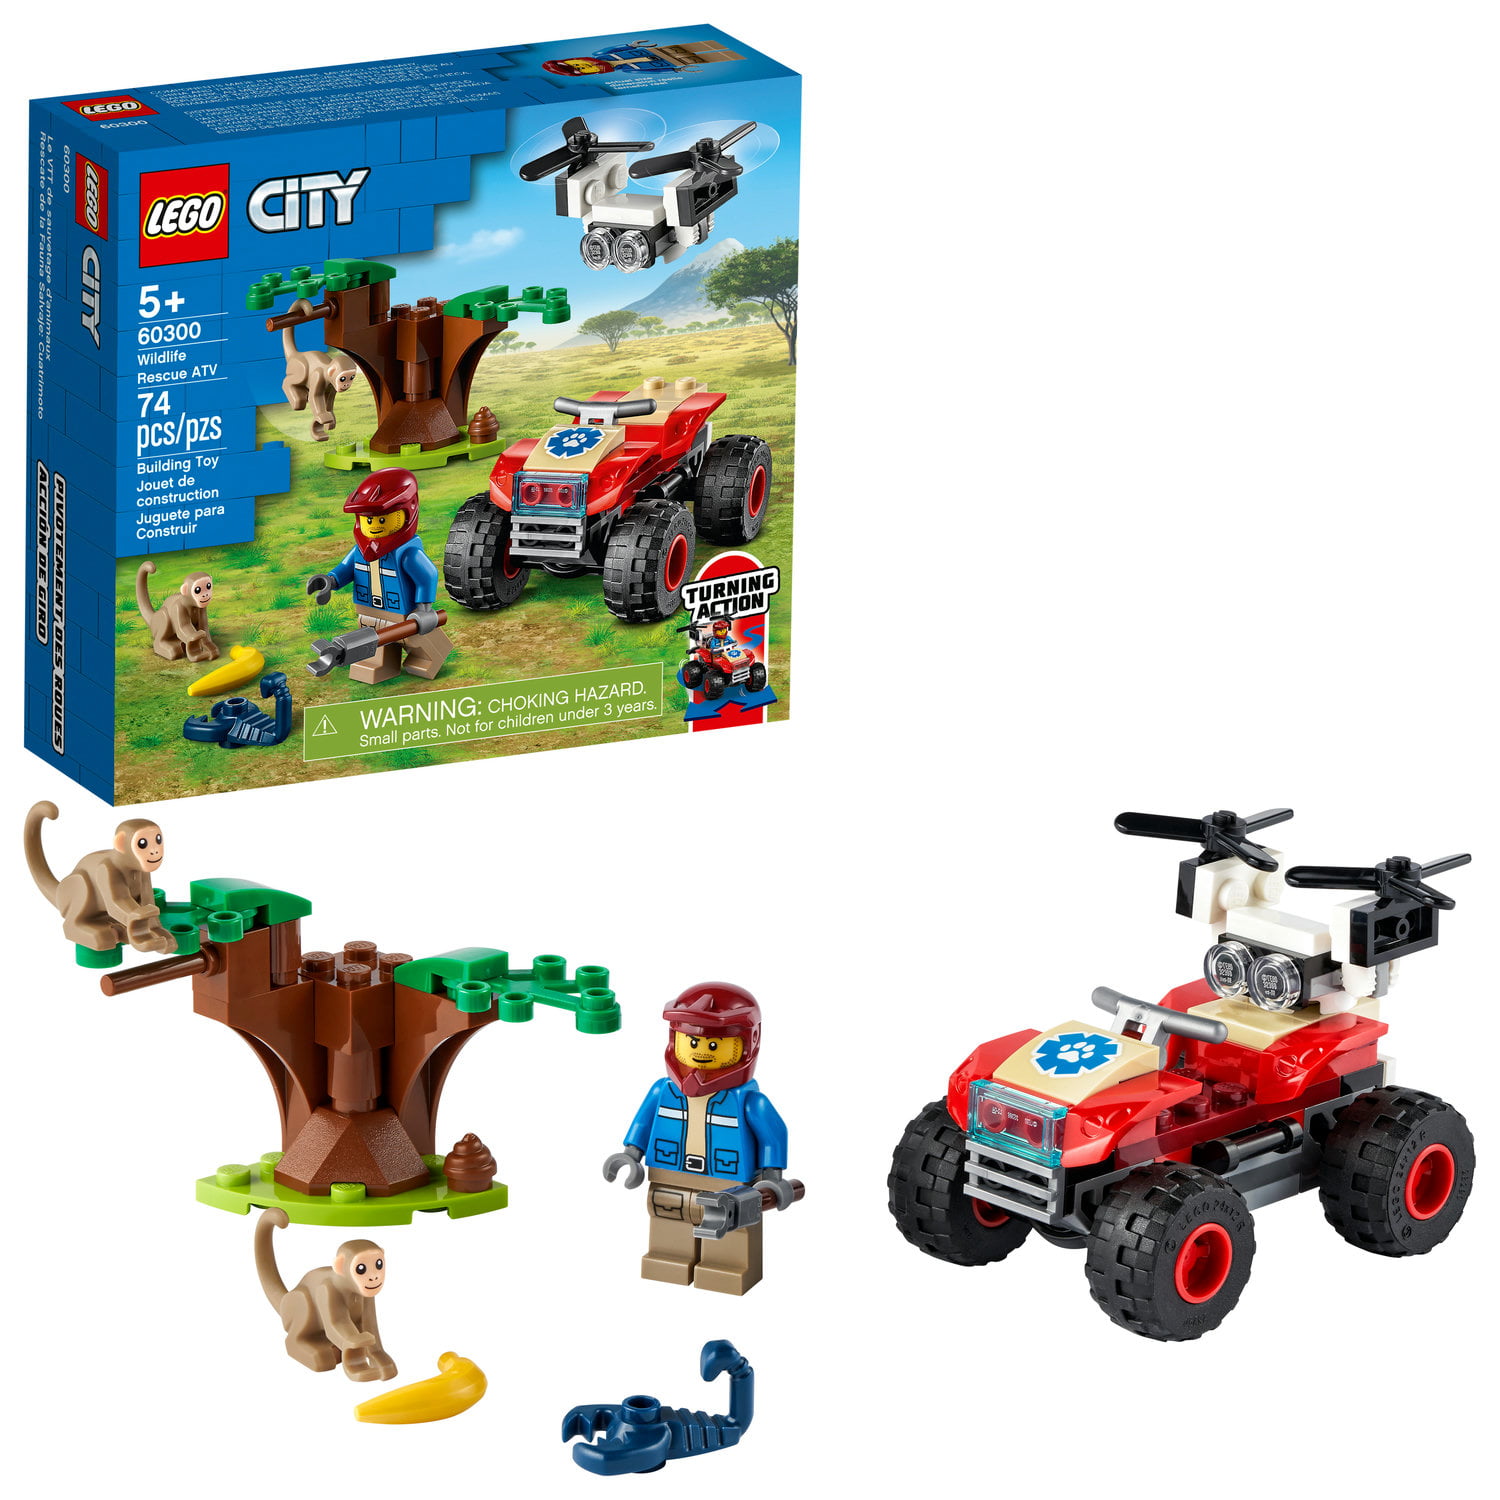 74-Piece Lego City Wildlife Rescue ATV Building Kit (60300) $6.50 + Free S&H w/ Walmart+, Prime or $25+